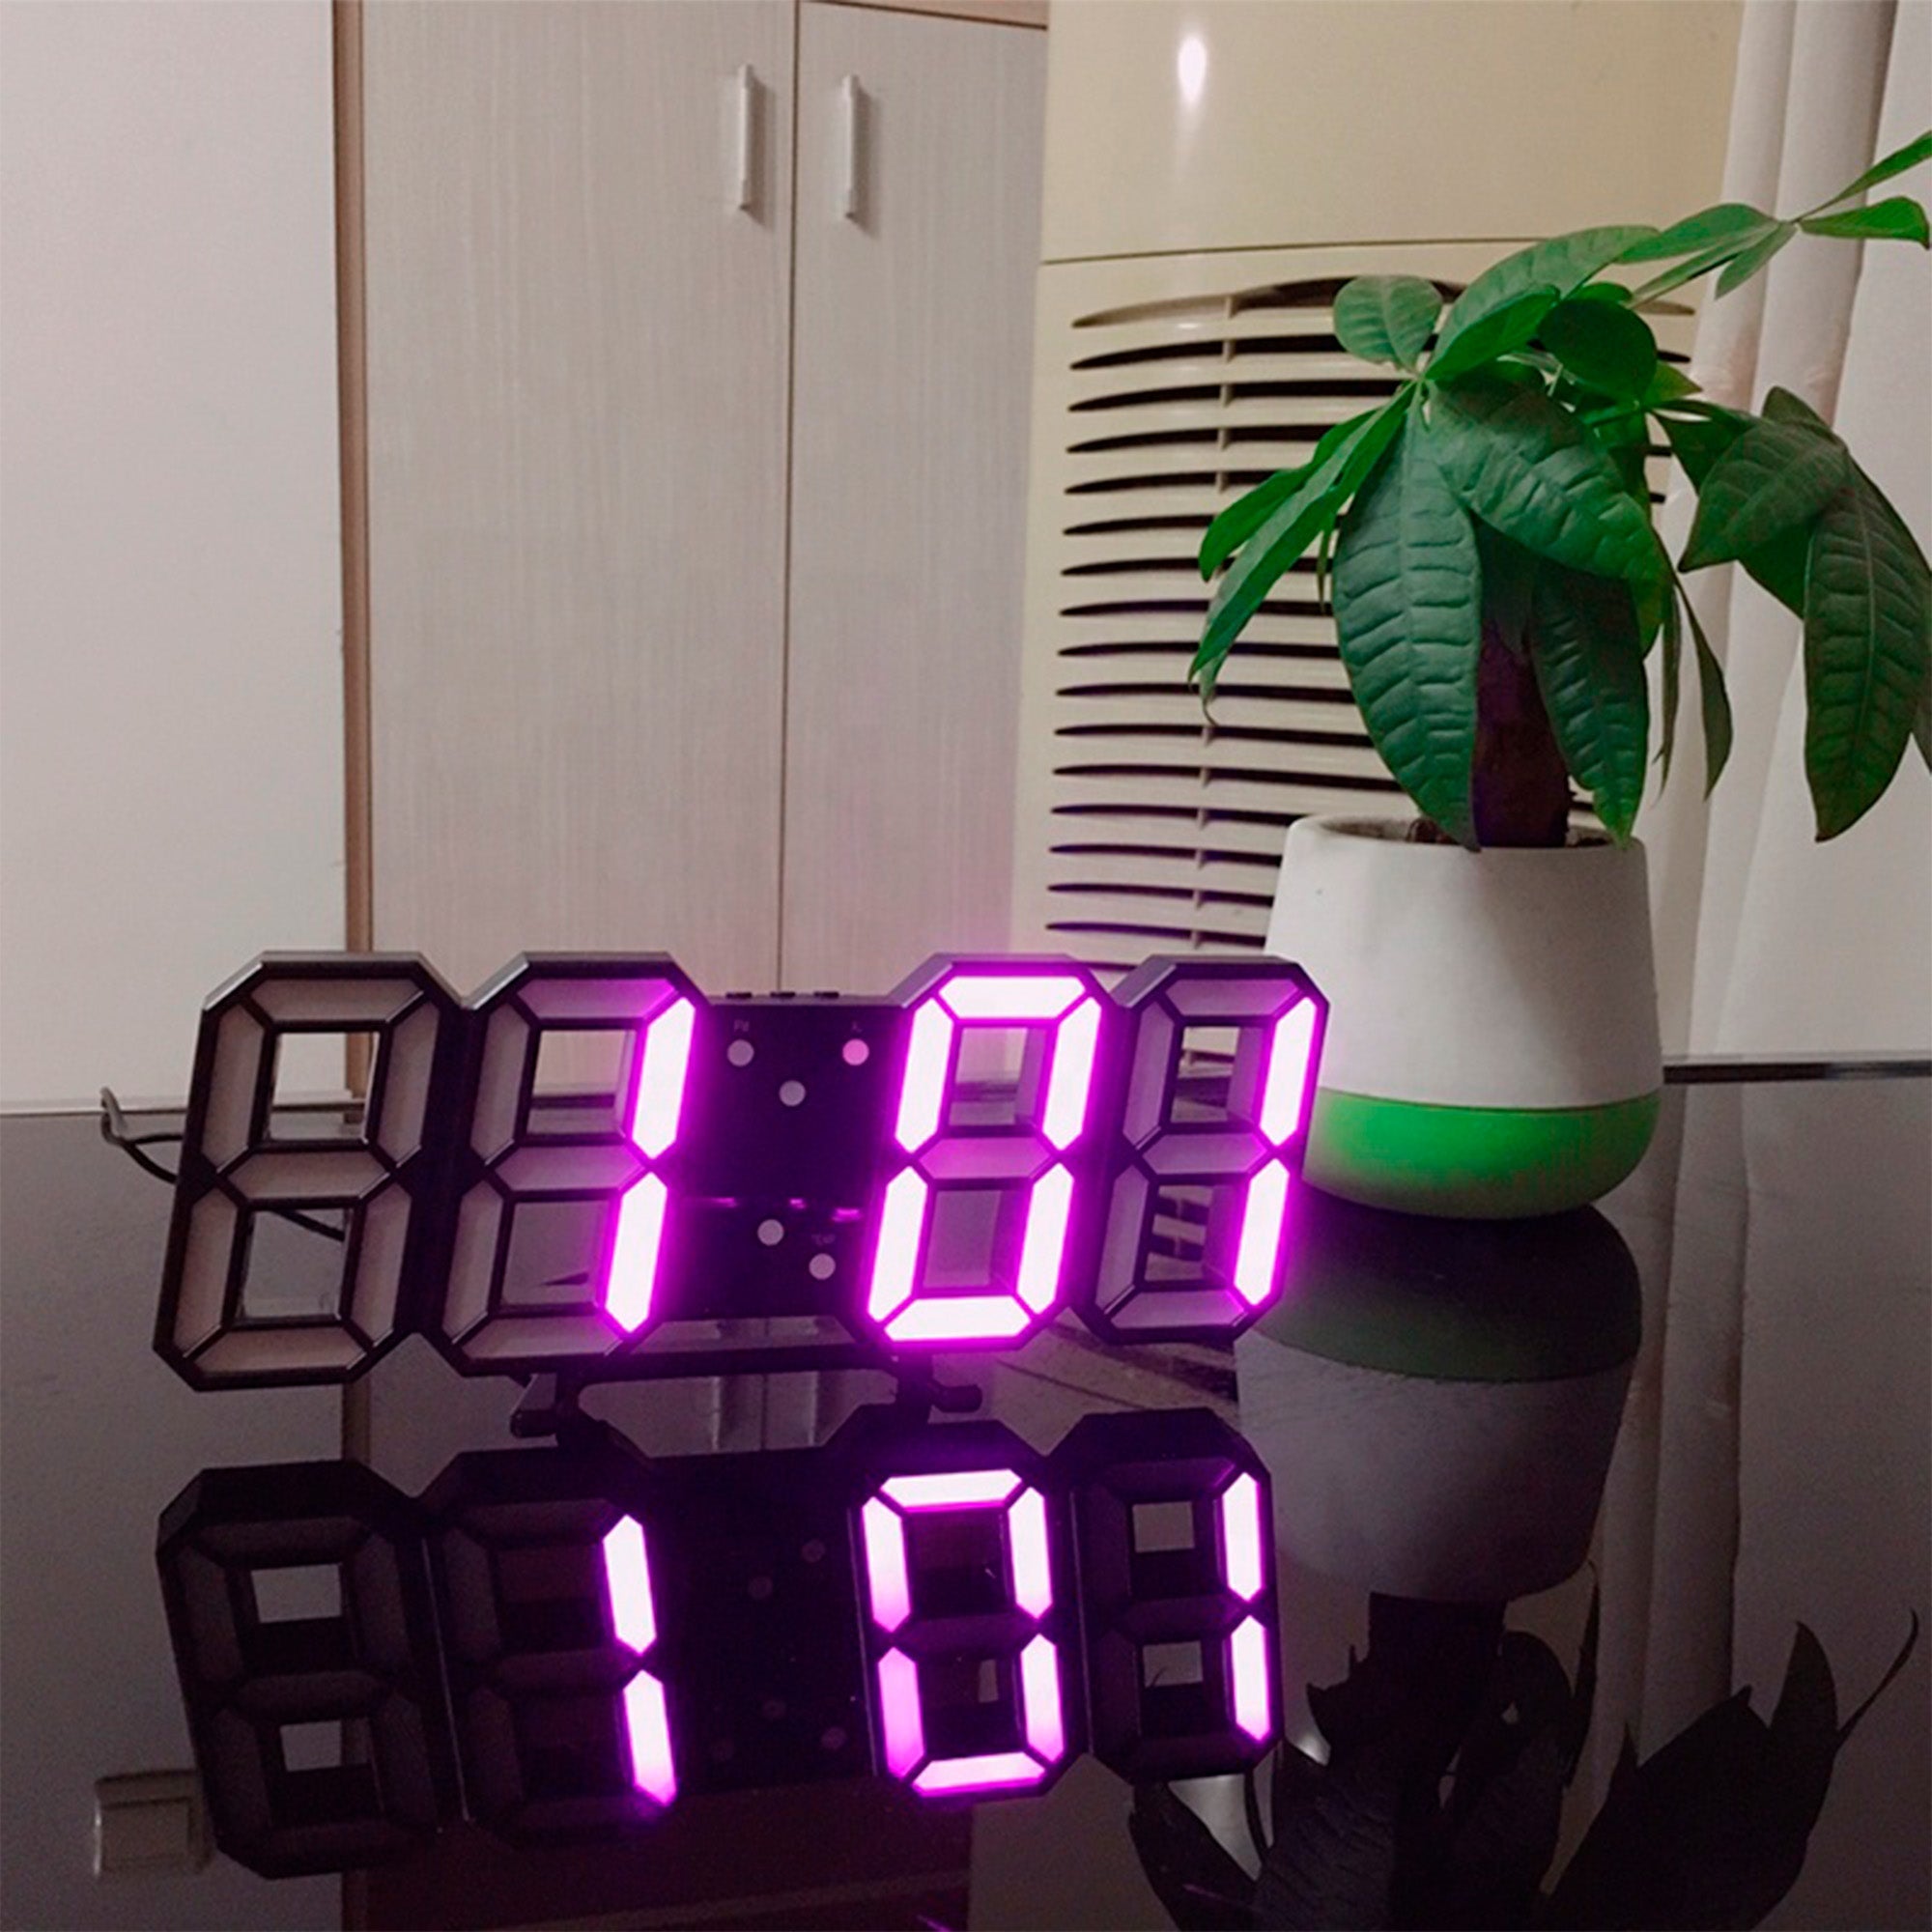 3D Wall Clock - Sveglia LED di design